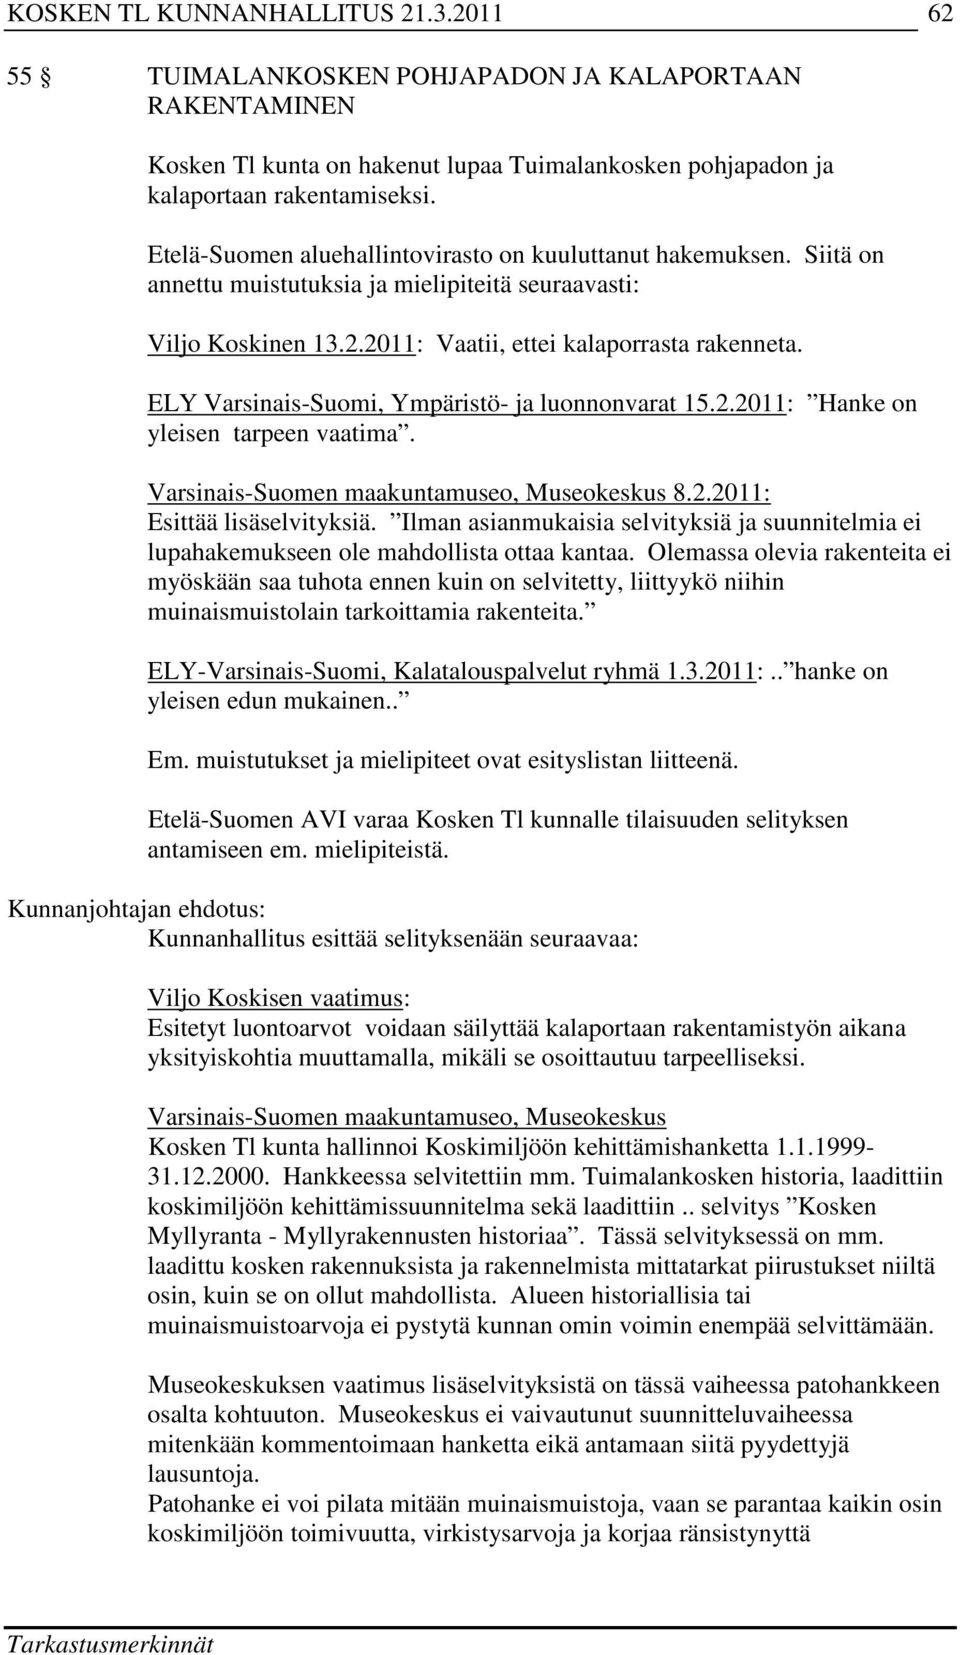 ELY Varsinais-Suomi, Ympäristö- ja luonnonvarat 15.2.2011: Hanke on yleisen tarpeen vaatima. Varsinais-Suomen maakuntamuseo, Museokeskus 8.2.2011: Esittää lisäselvityksiä.